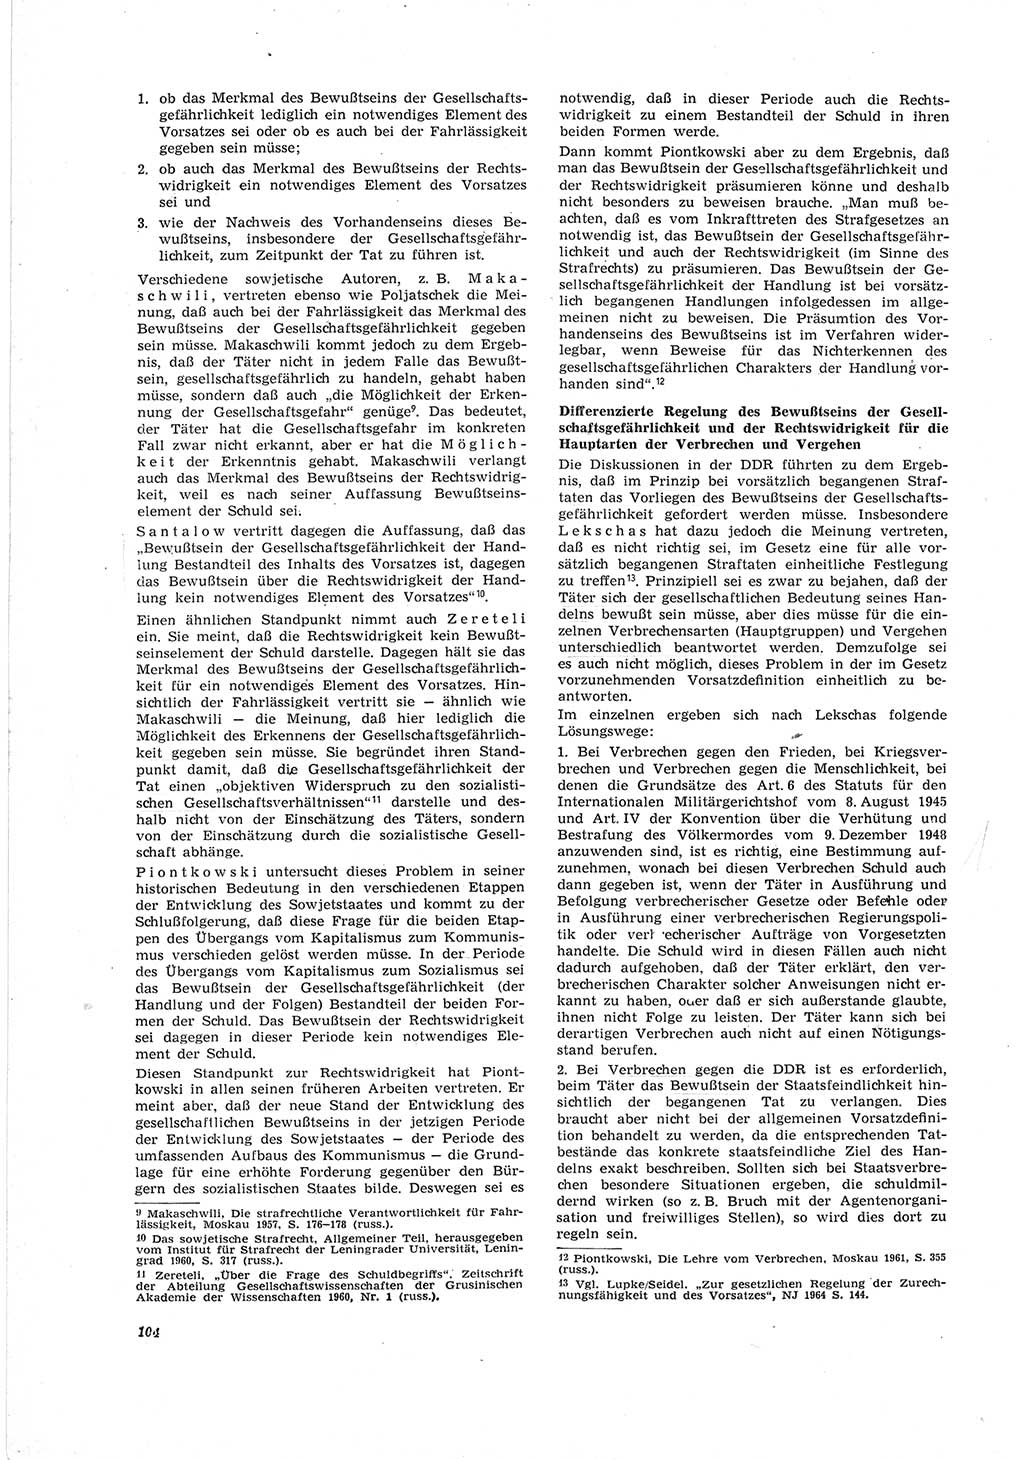 Neue Justiz (NJ), Zeitschrift für Recht und Rechtswissenschaft [Deutsche Demokratische Republik (DDR)], 19. Jahrgang 1965, Seite 104 (NJ DDR 1965, S. 104)